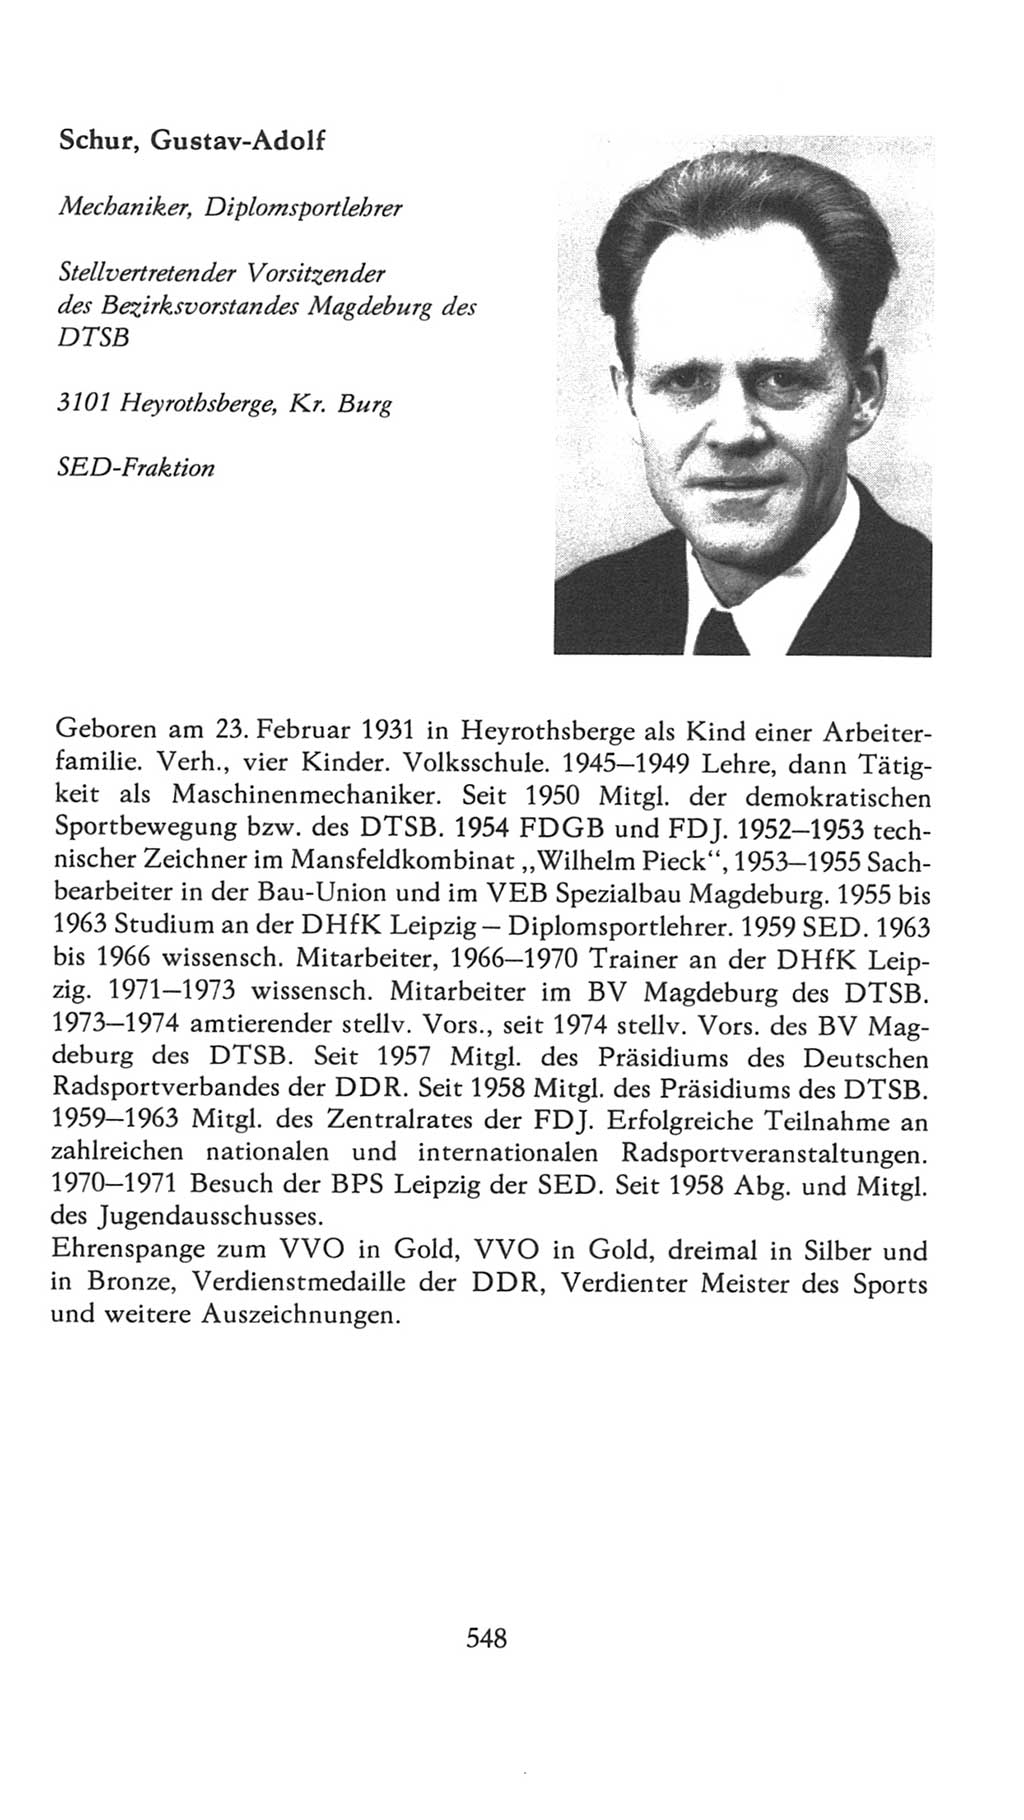 Volkskammer (VK) der Deutschen Demokratischen Republik (DDR), 7. Wahlperiode 1976-1981, Seite 548 (VK. DDR 7. WP. 1976-1981, S. 548)